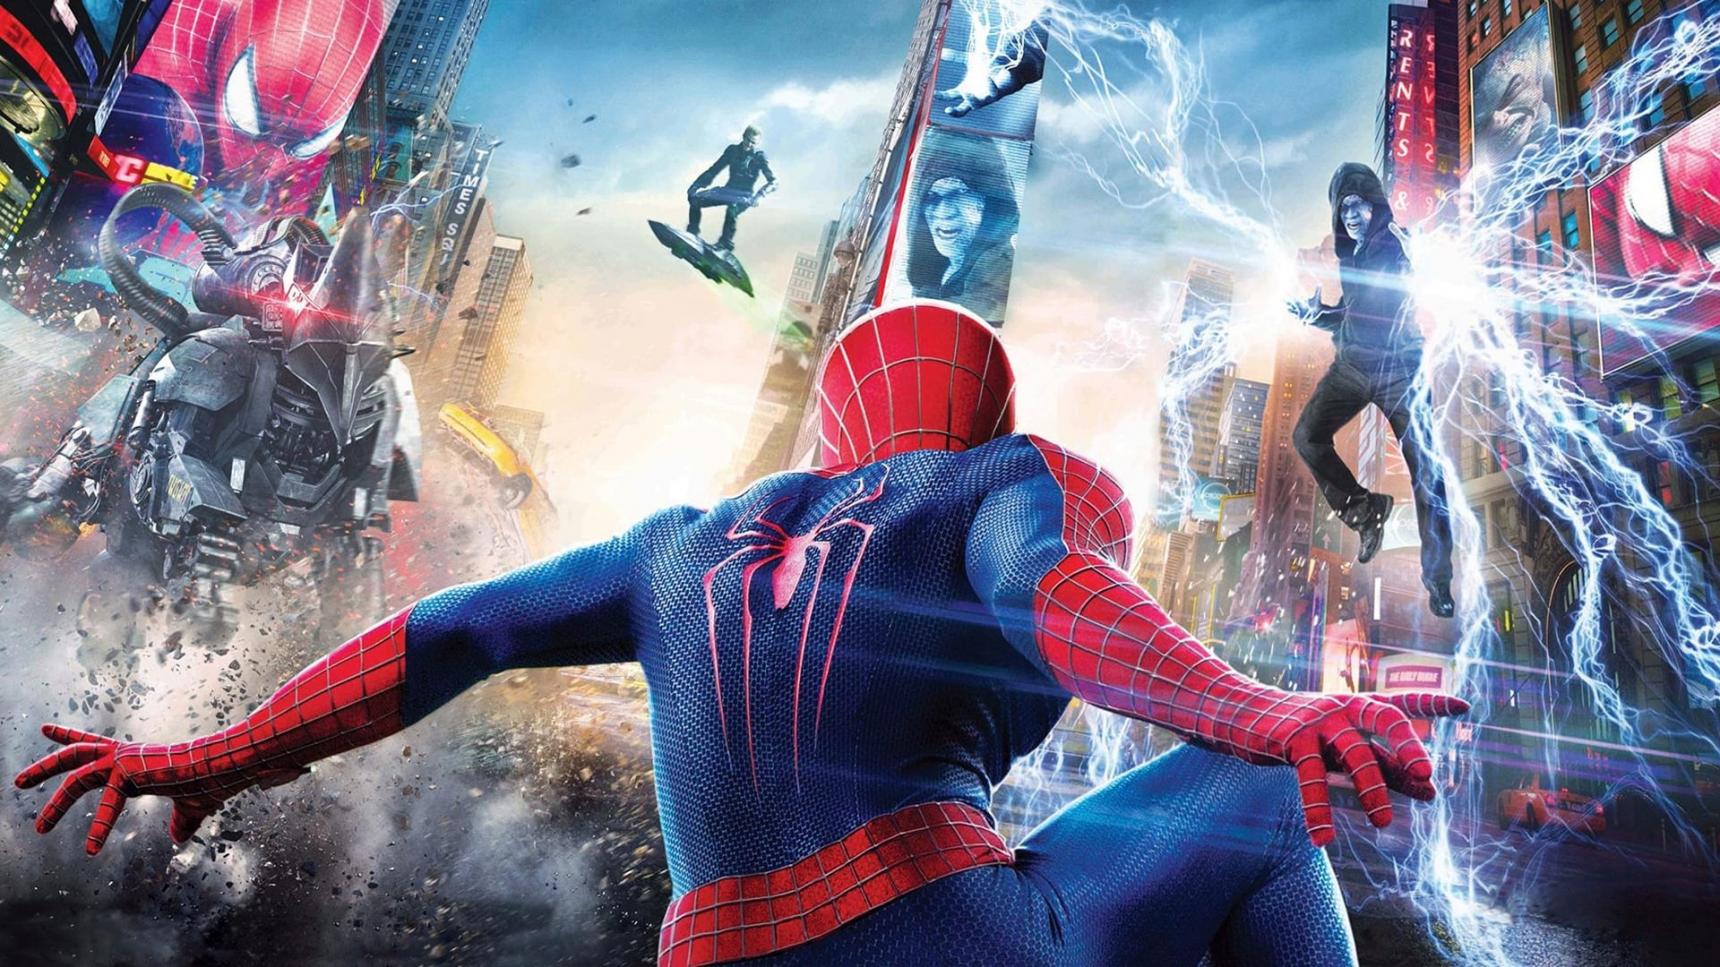 Ver The Amazing Spider-Man 2: El poder de Electro Online Gratis (⚜️ 2014) |  CUEVANA3